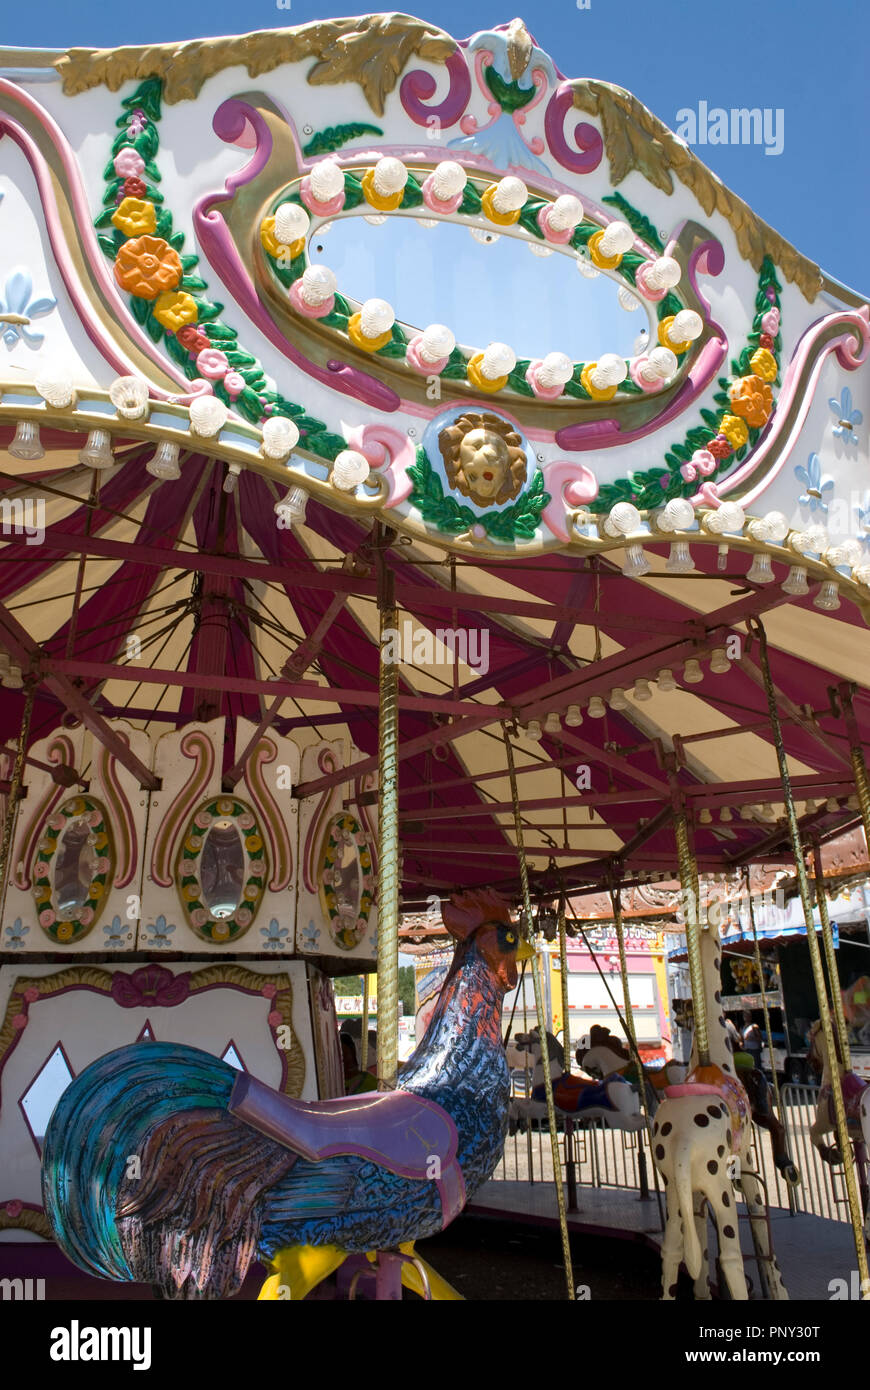 La Rooster presentato sulla giostra ride a Ocean Drive Pavilion Amusement Park segno a North Myrtle Beach South Carolina, Stati Uniti d'America. Foto Stock